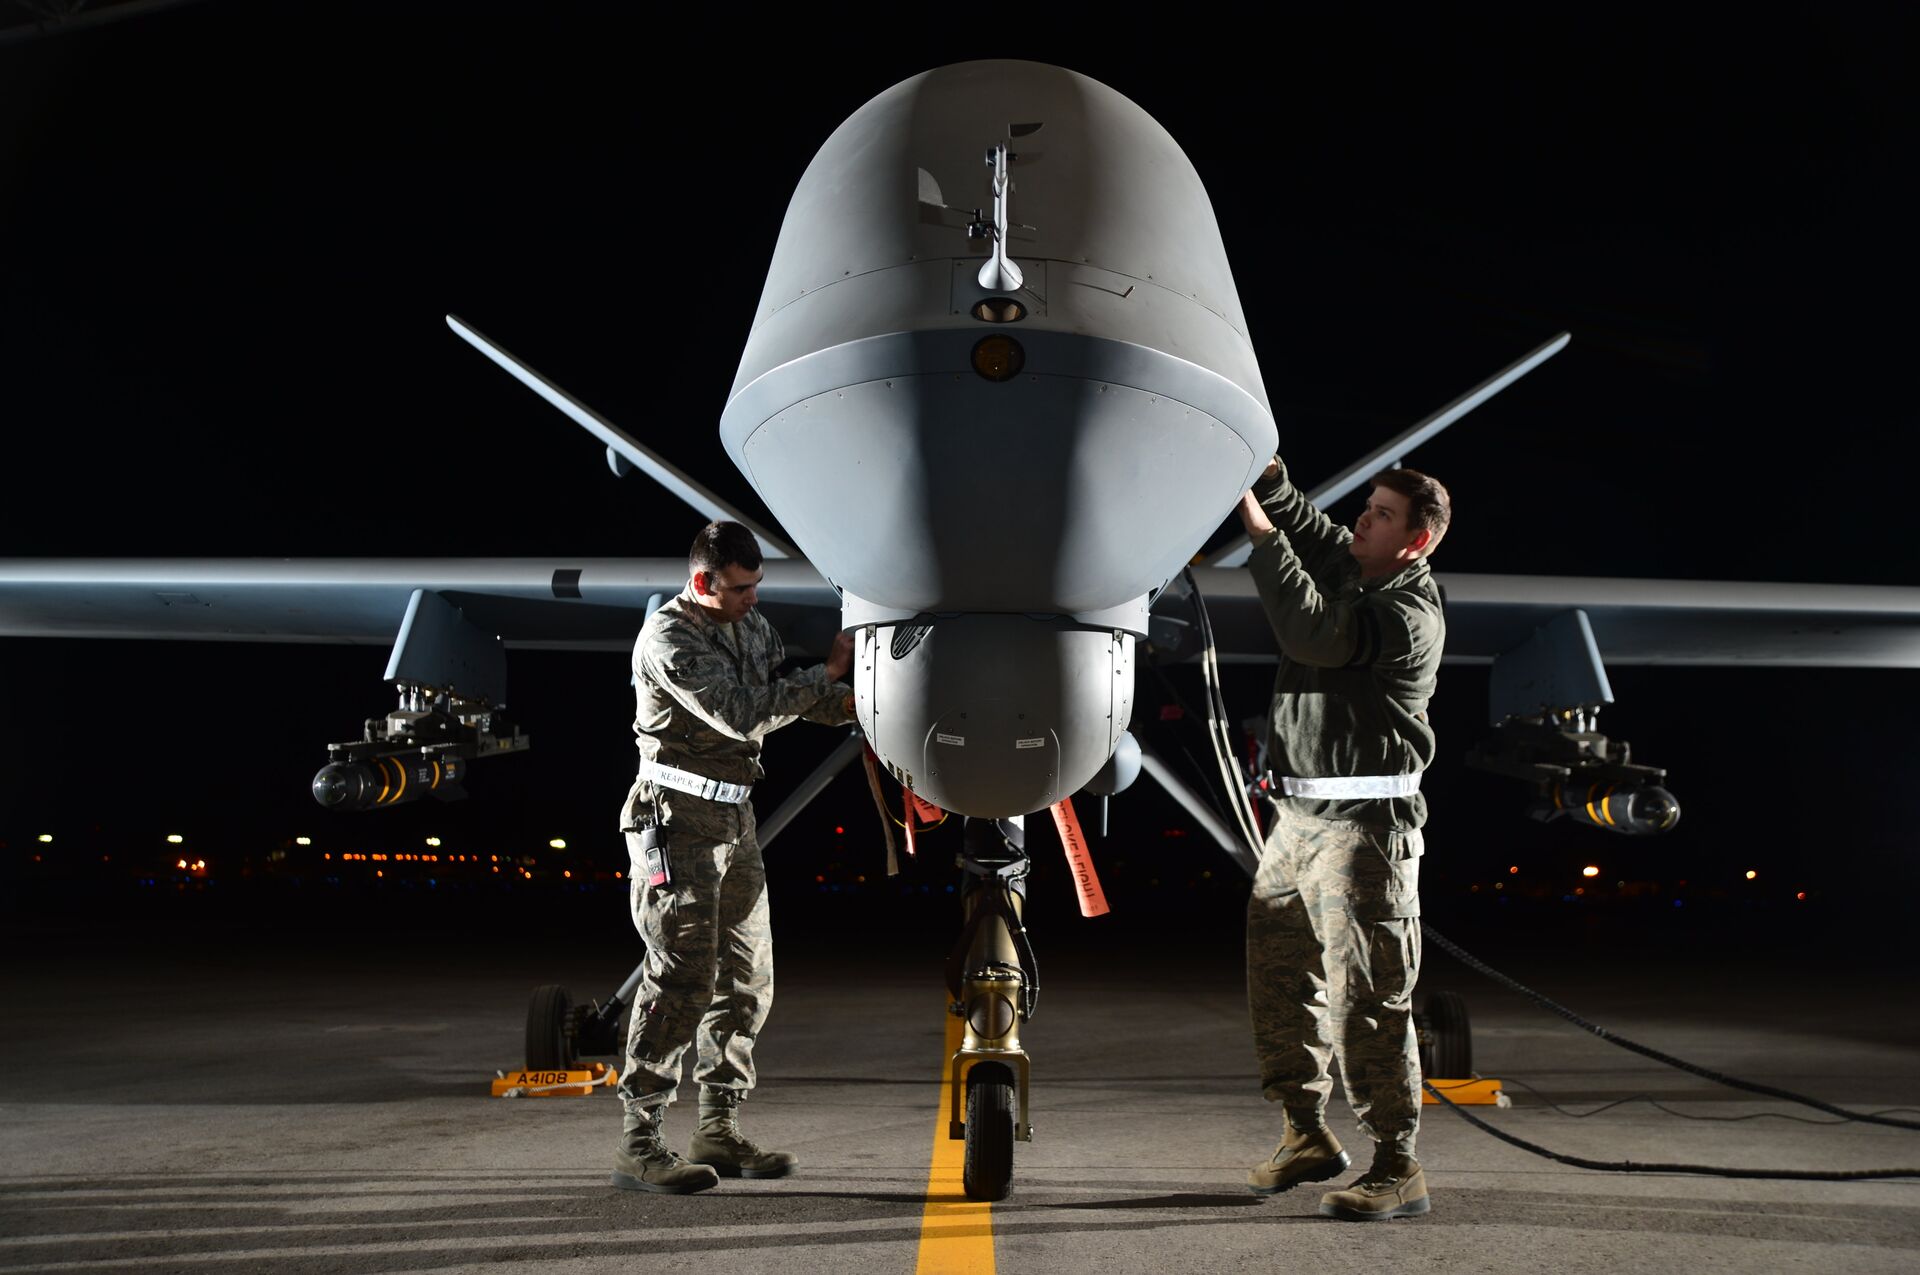 Índia vai comprar drones MQ-9B Predator dos EUA para combater China e Paquistão, revela mídia - Sputnik Brasil, 1920, 10.03.2021